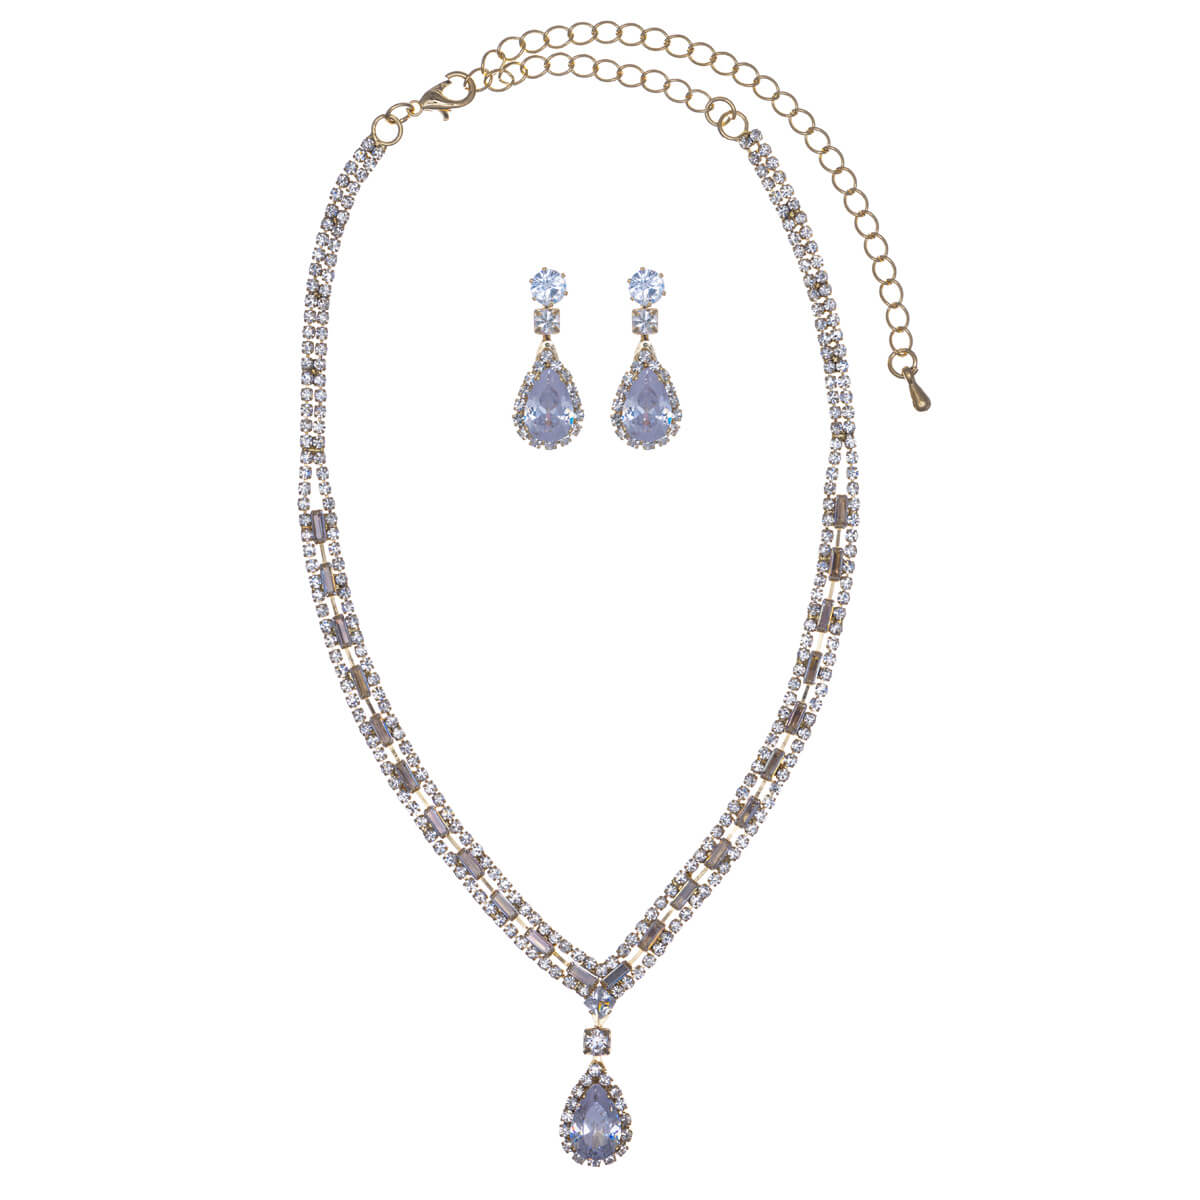 Drop pendant festive necklace + earrings